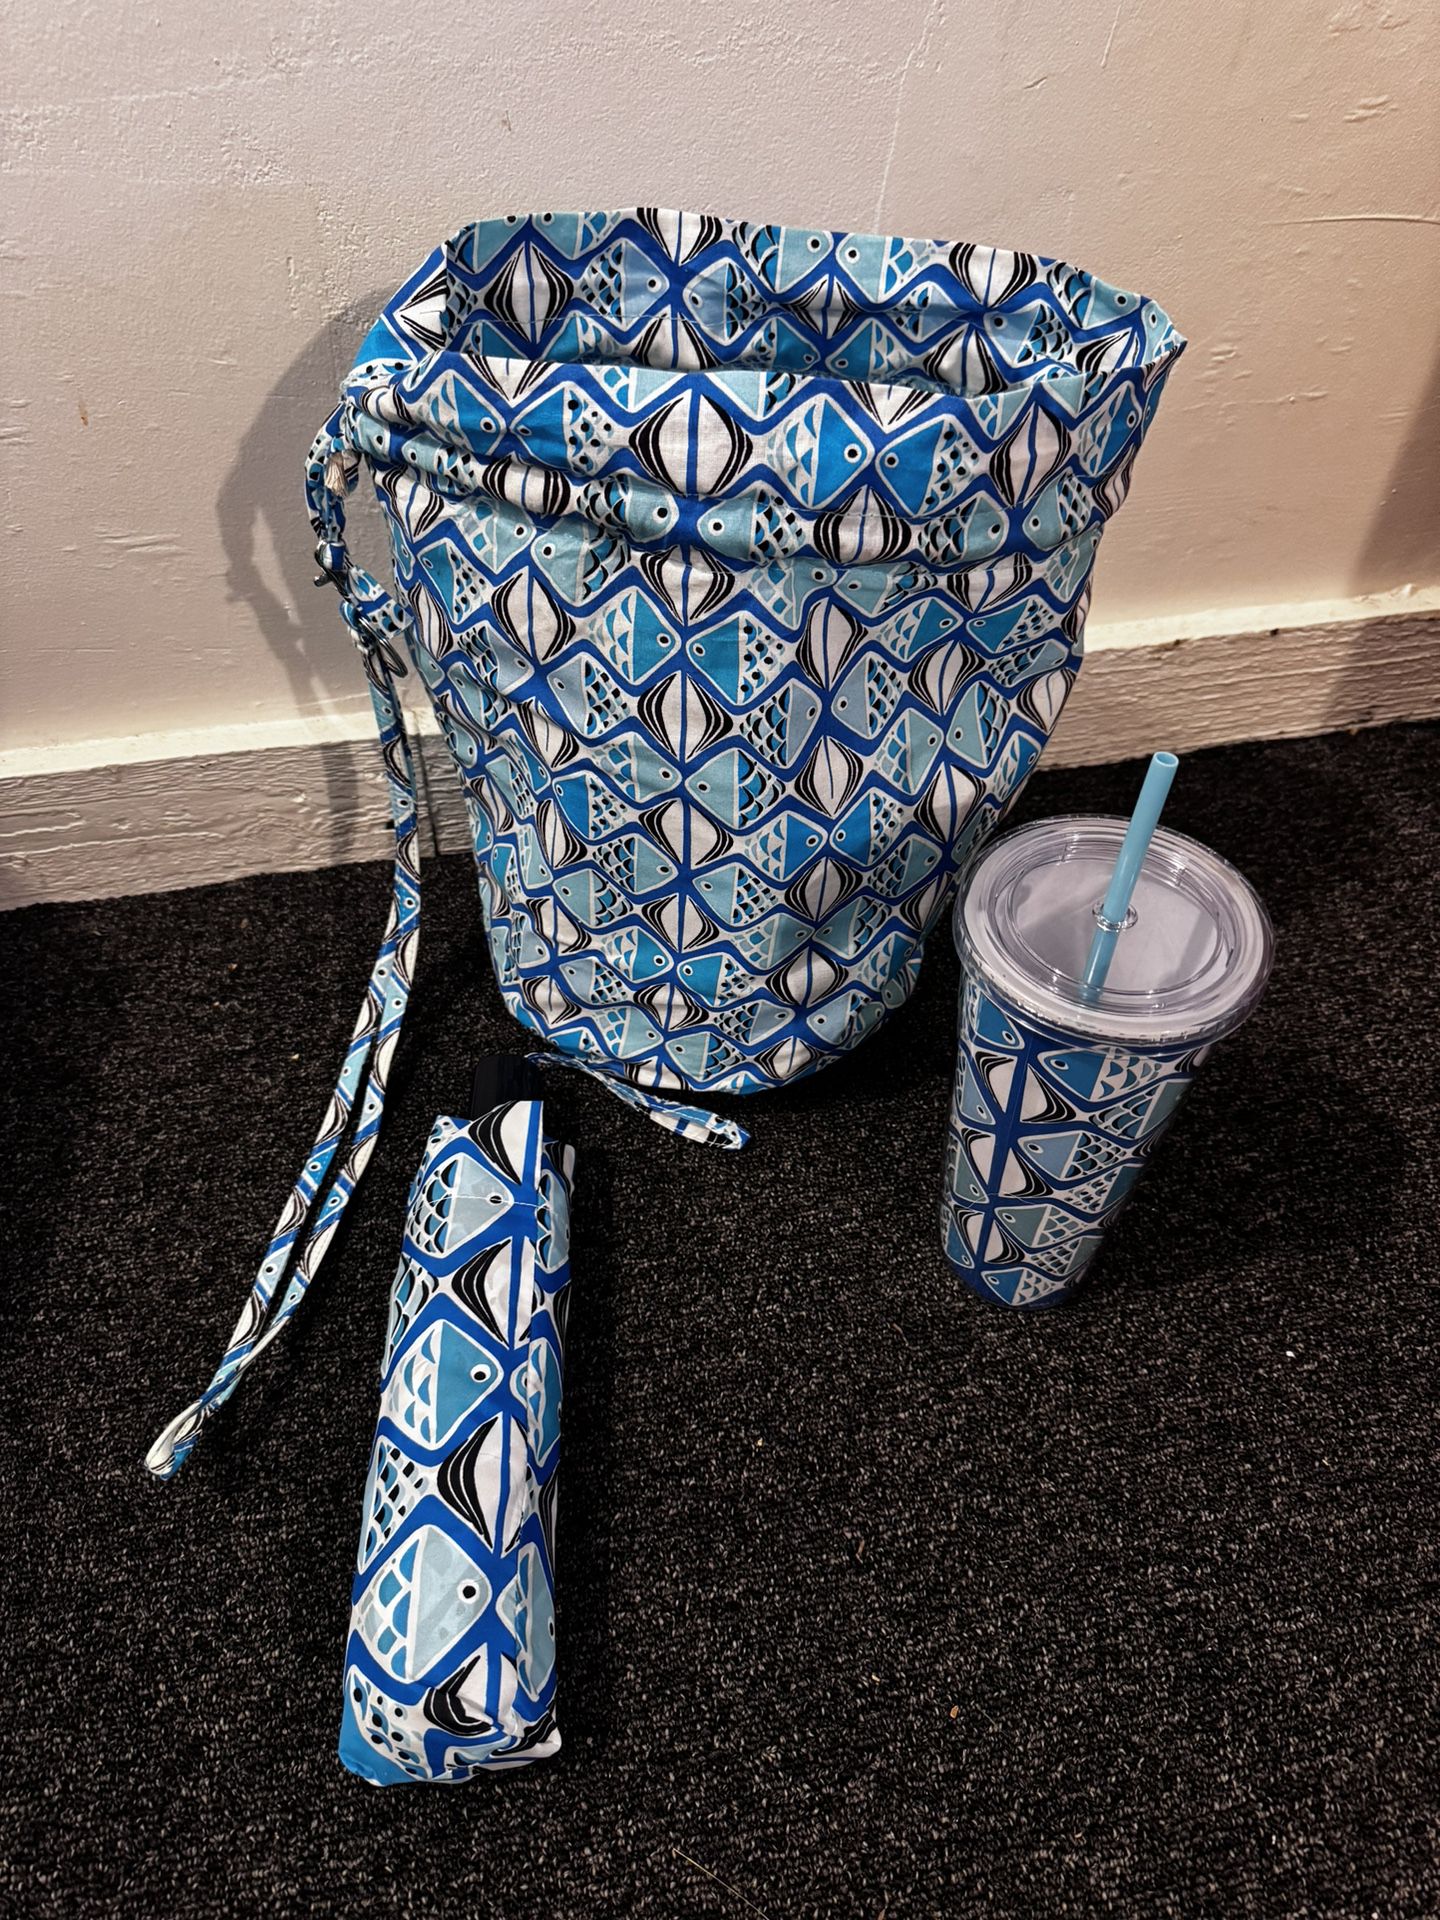 Cup, Umbrella, And Bags Set